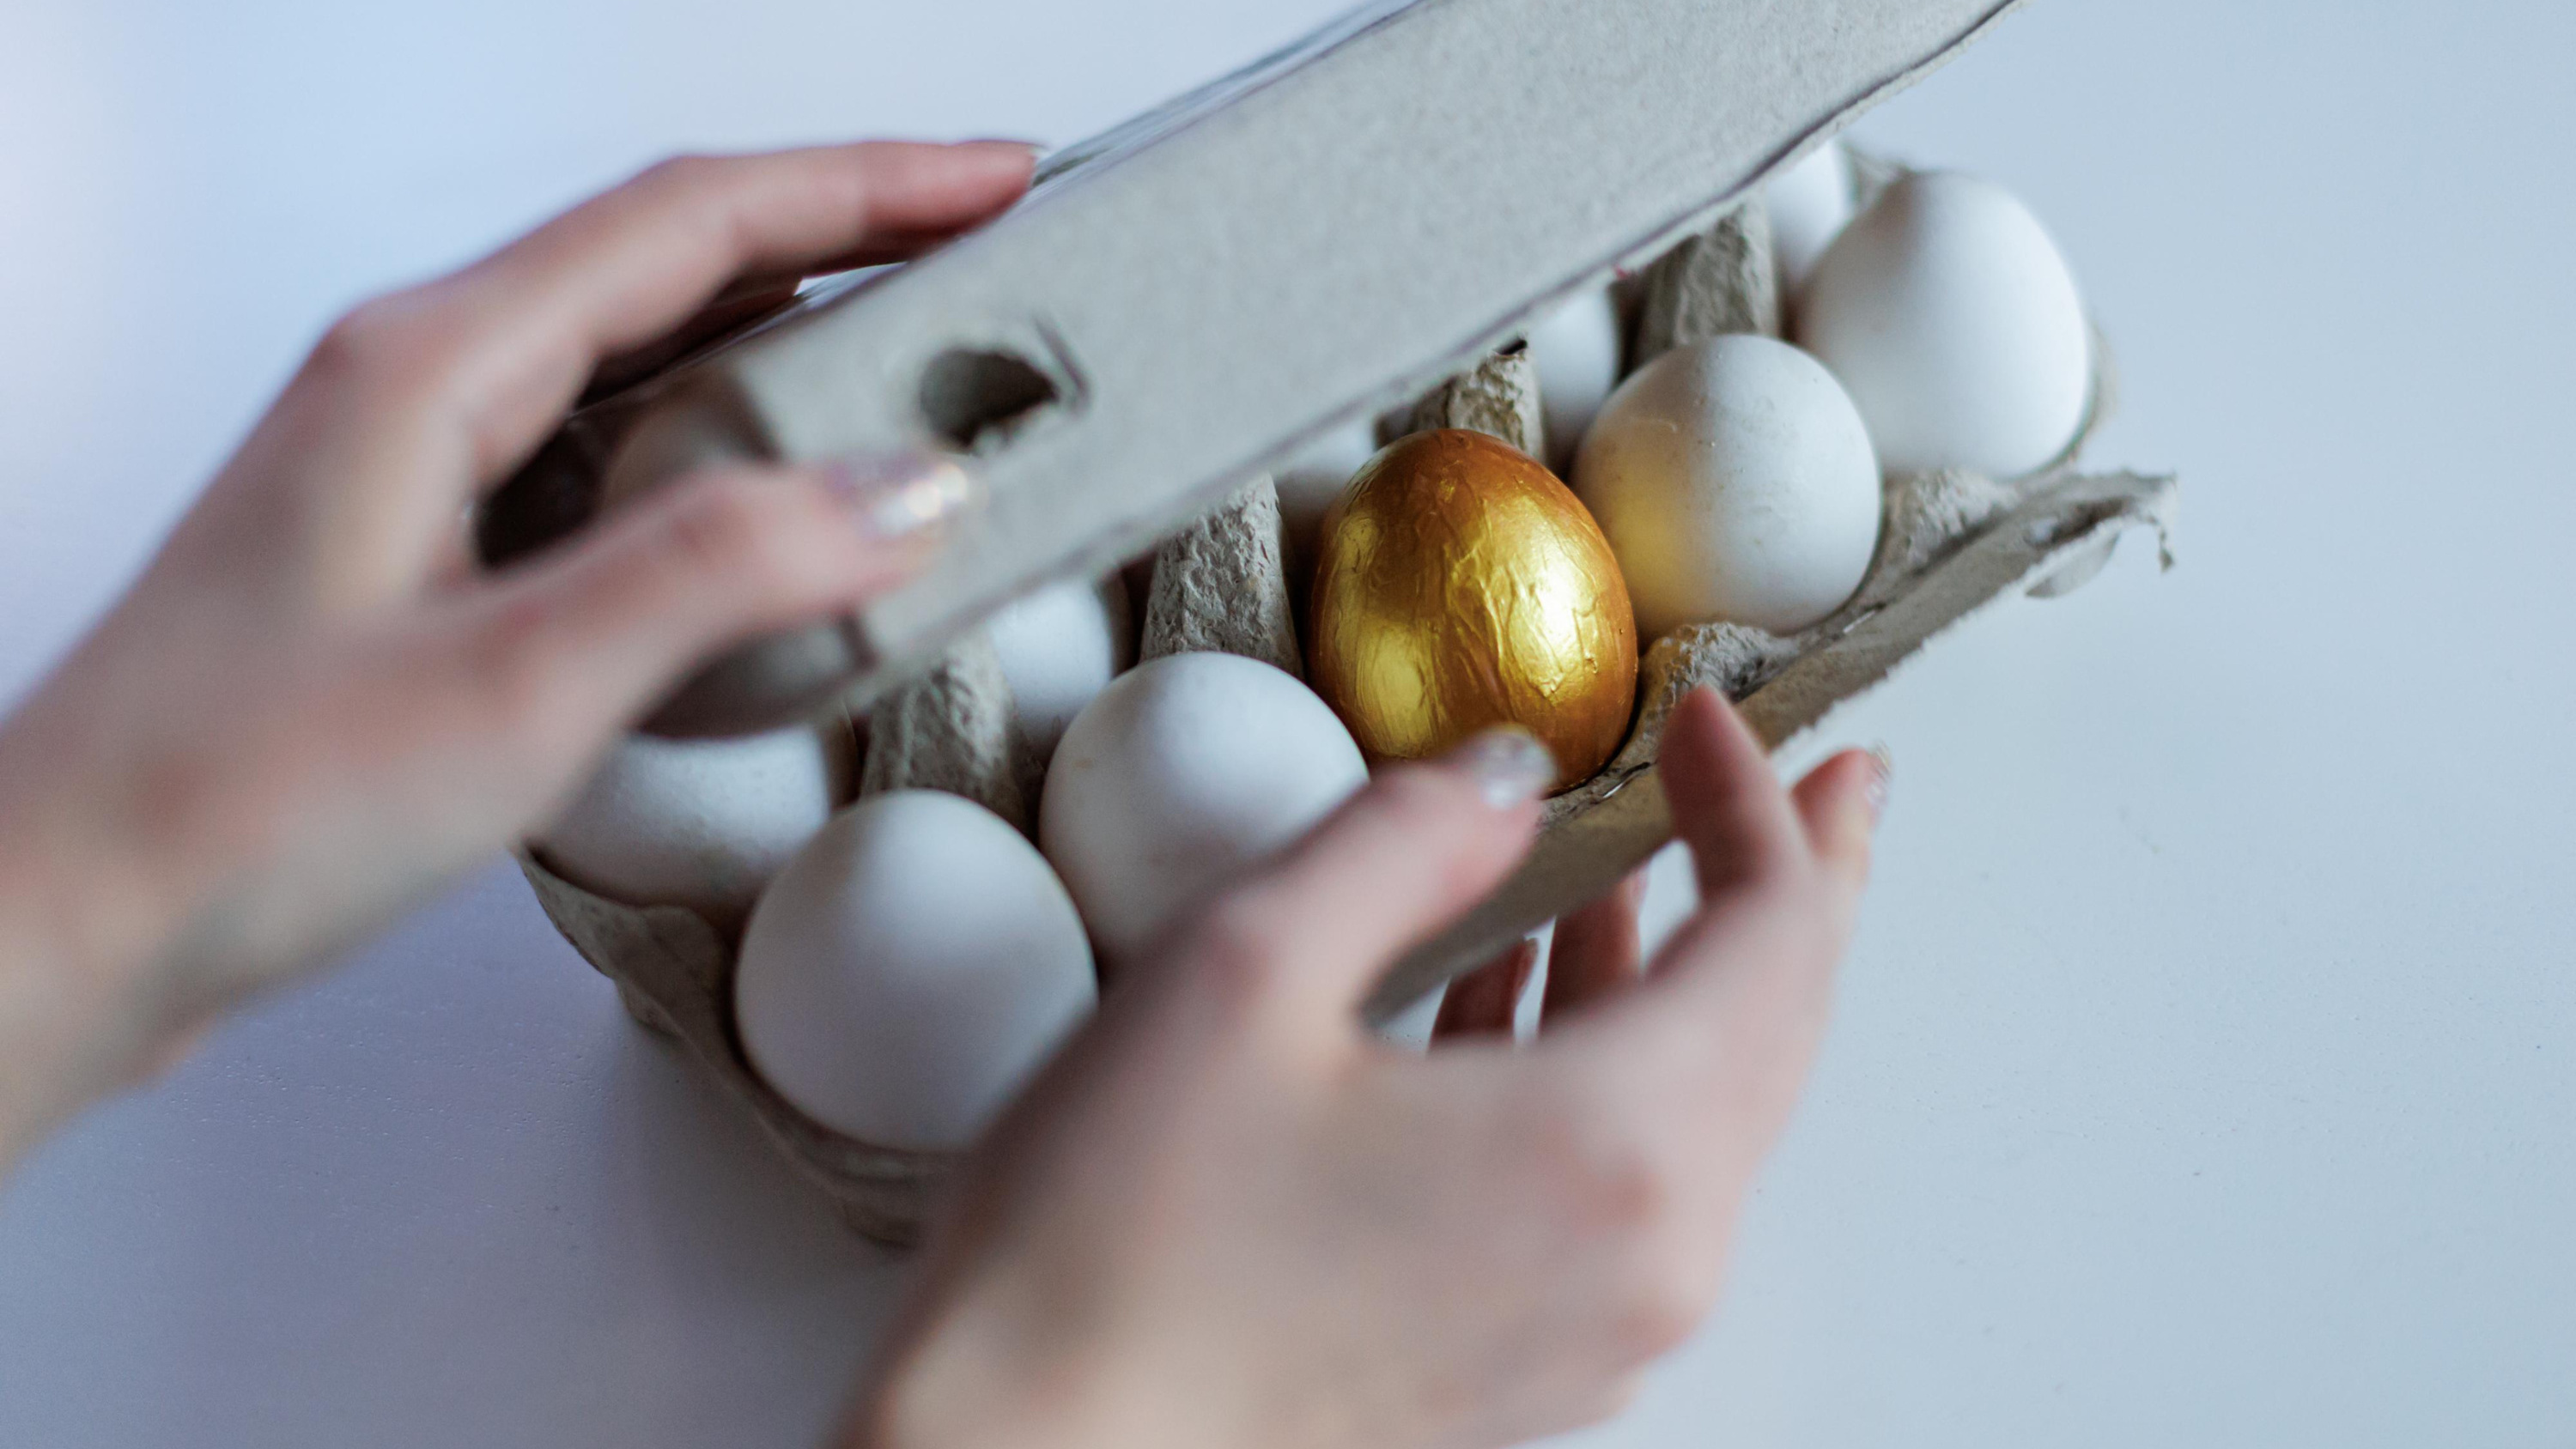 Стоят как Фаберже: почему кузбасские яйца оказались дороже привозных